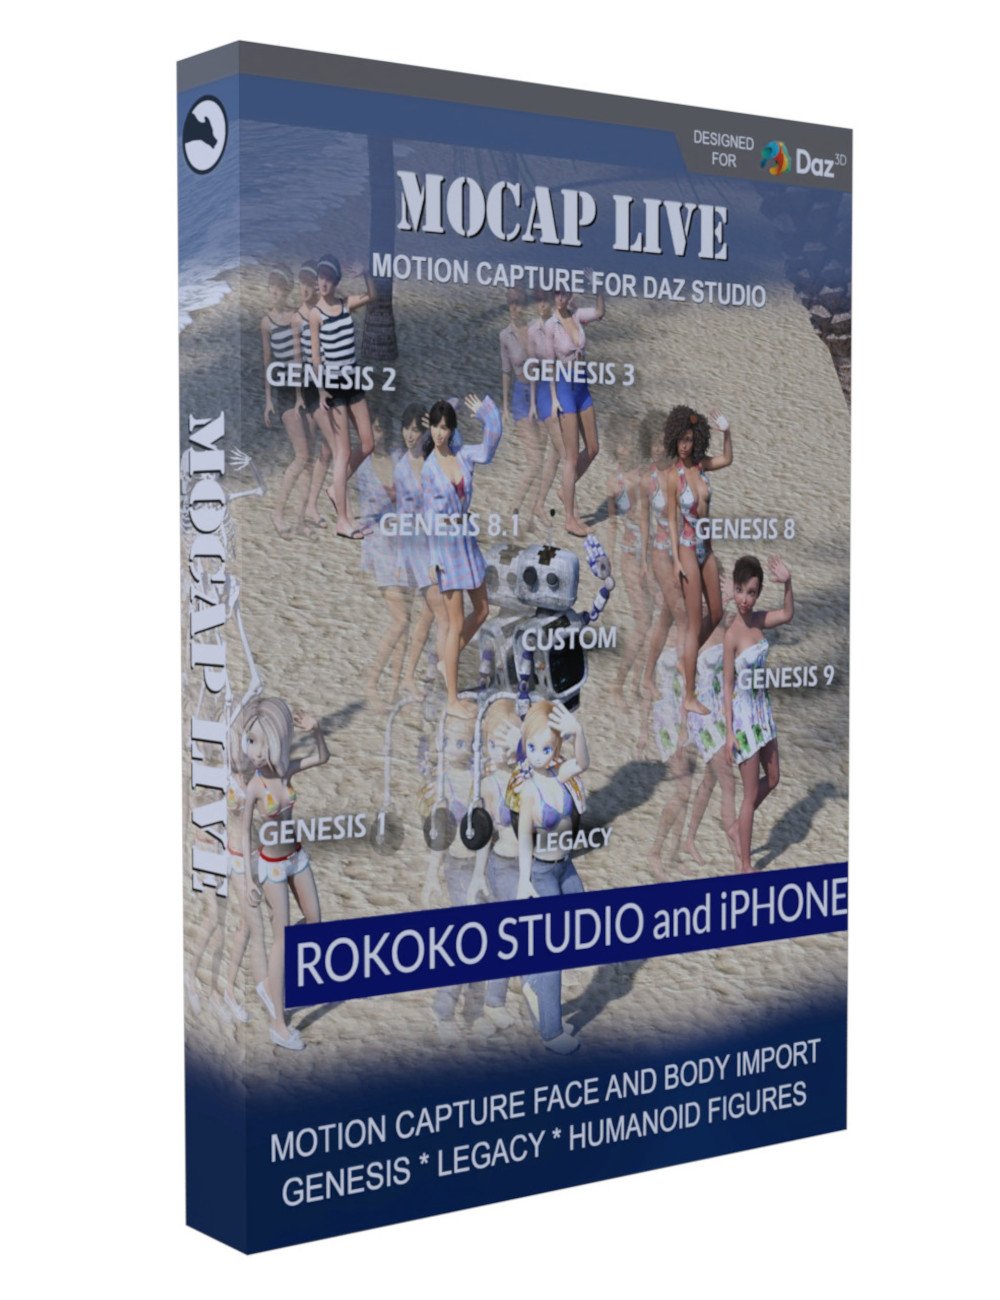 Mocap Live by: Lunarlume, 3D Models by Daz 3D